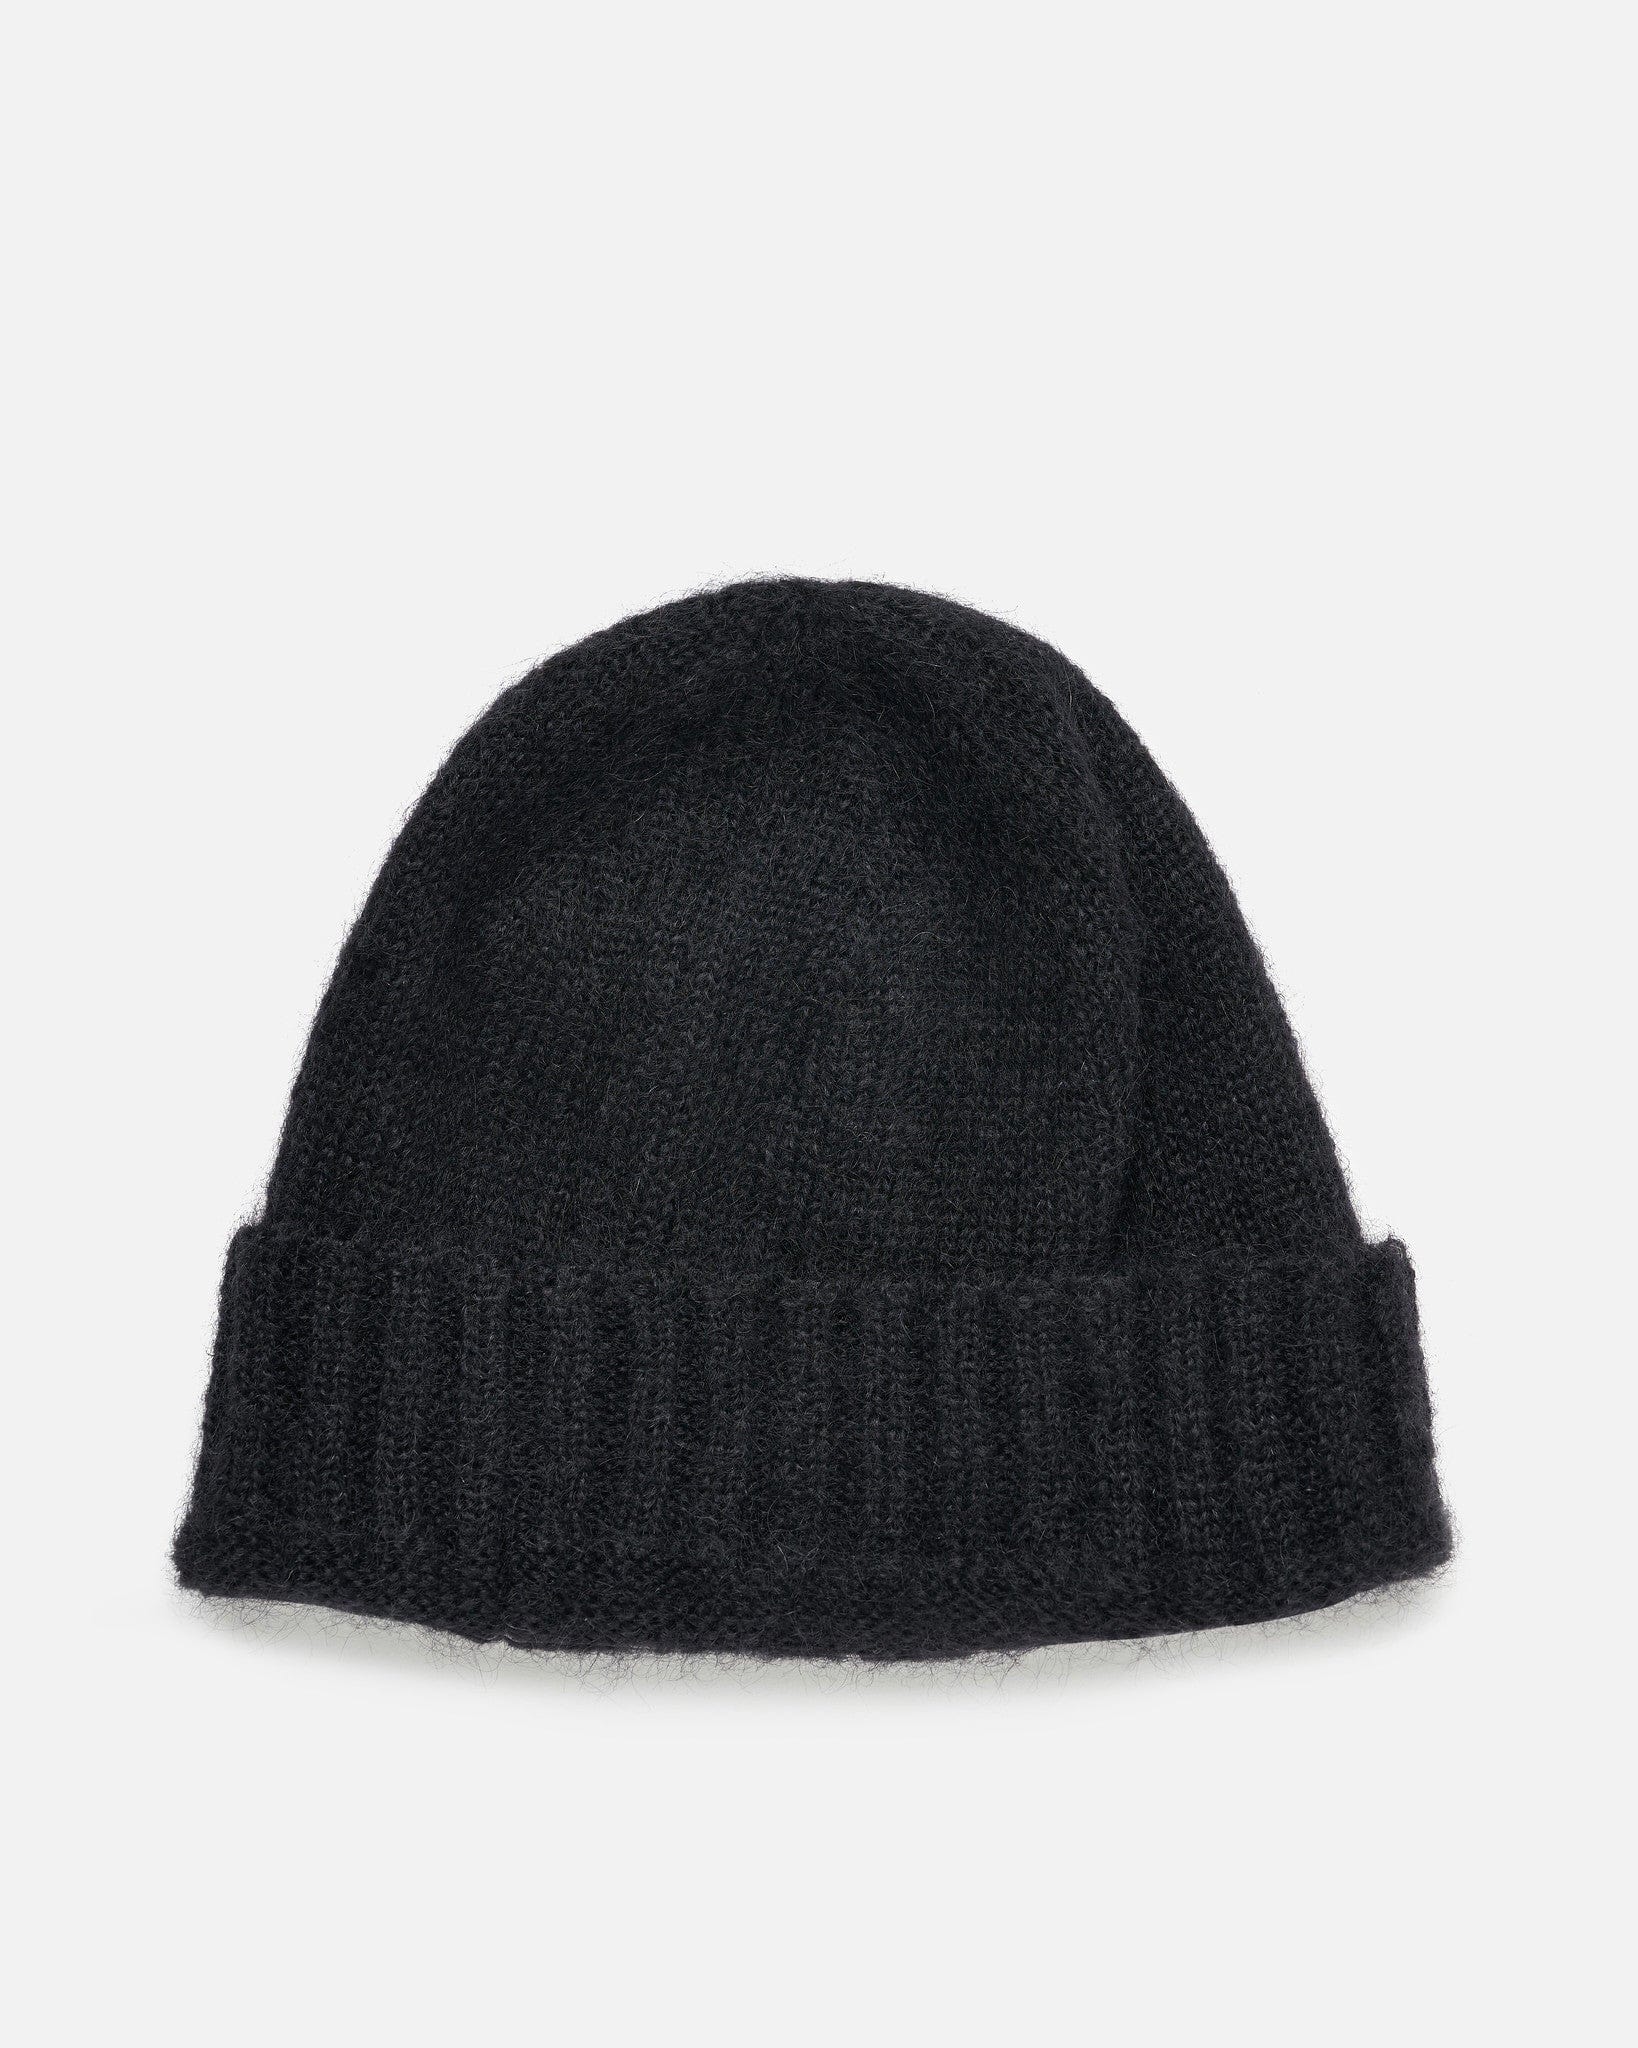 Raf Simons Men's Hats Mohair Beanie in Black